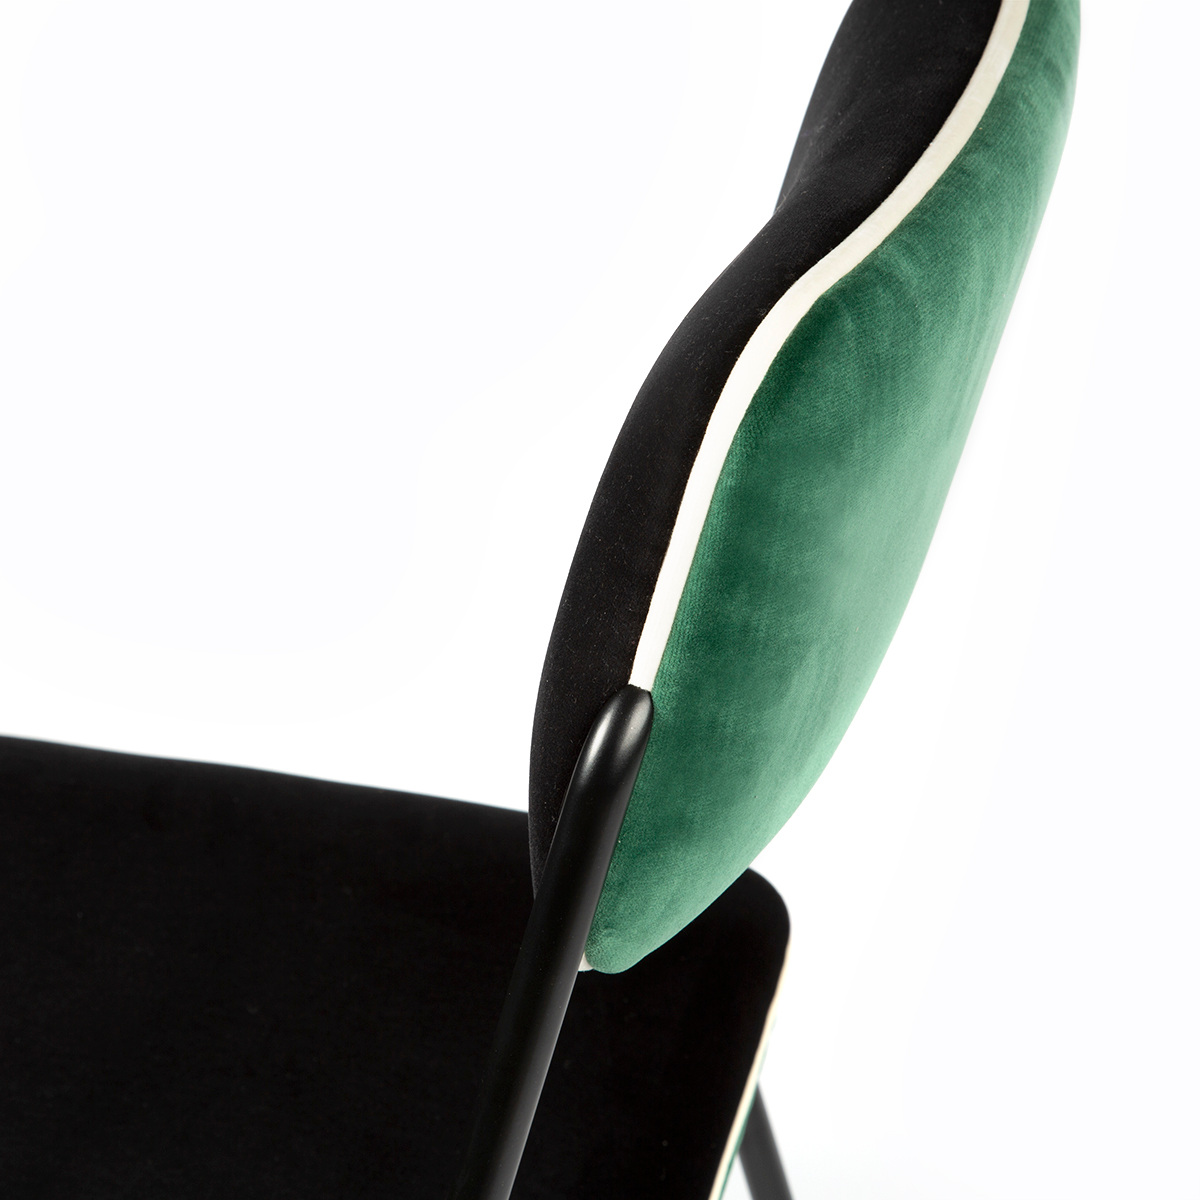 Chaise Double Jeu, Vert - H85 x l51 x P43 cm - Acier / Velours - image 5